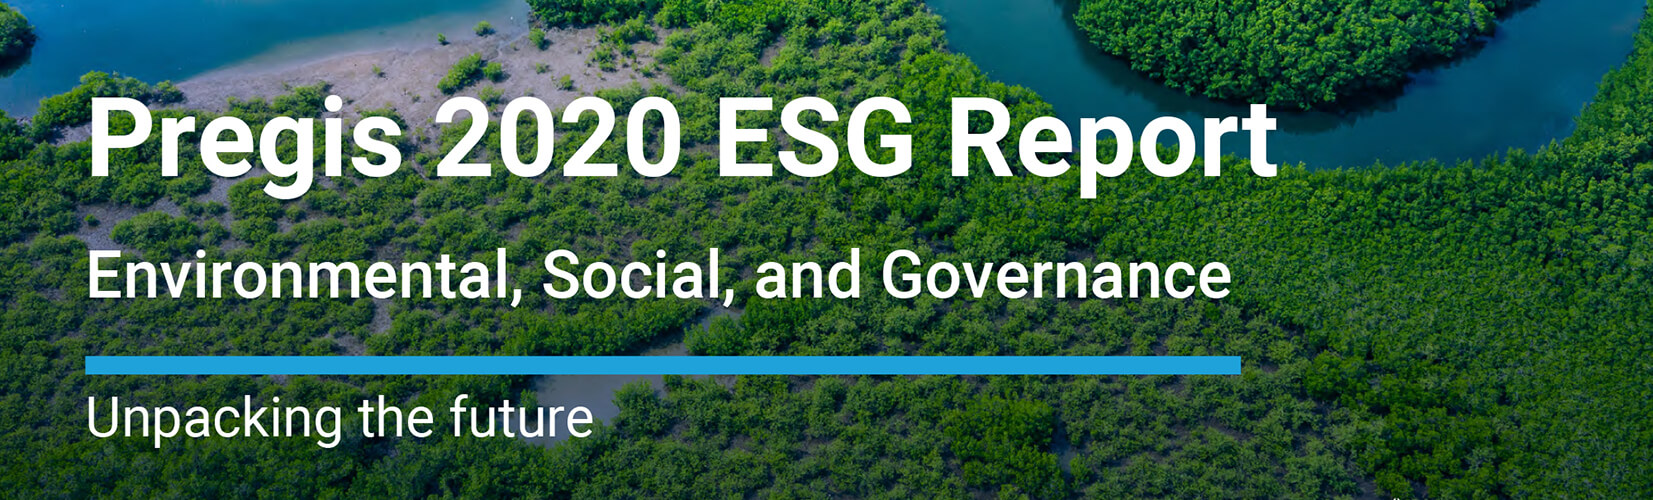 Pregis ESG Report 2020